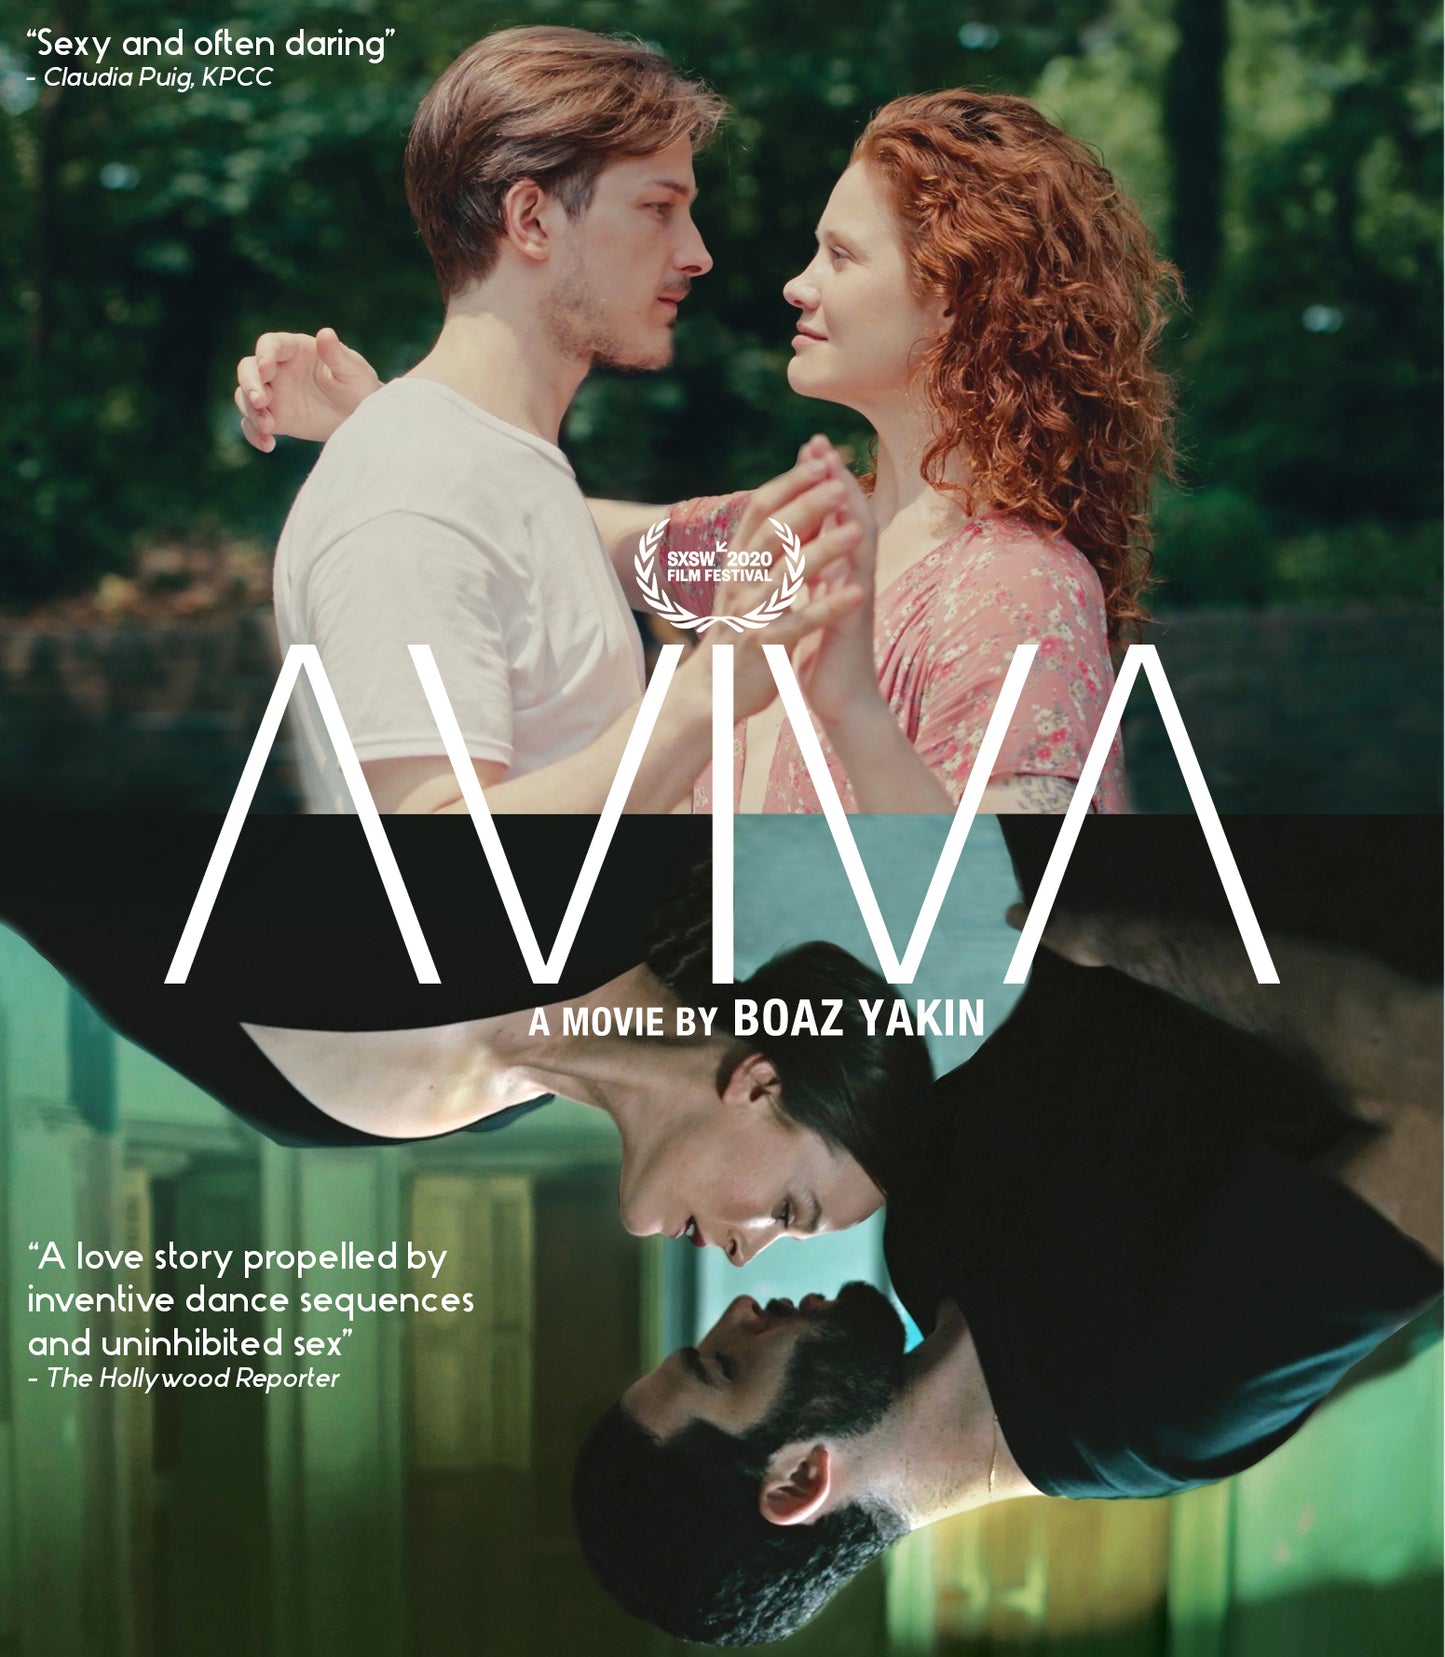 Aviva [Blu-ray] cover art